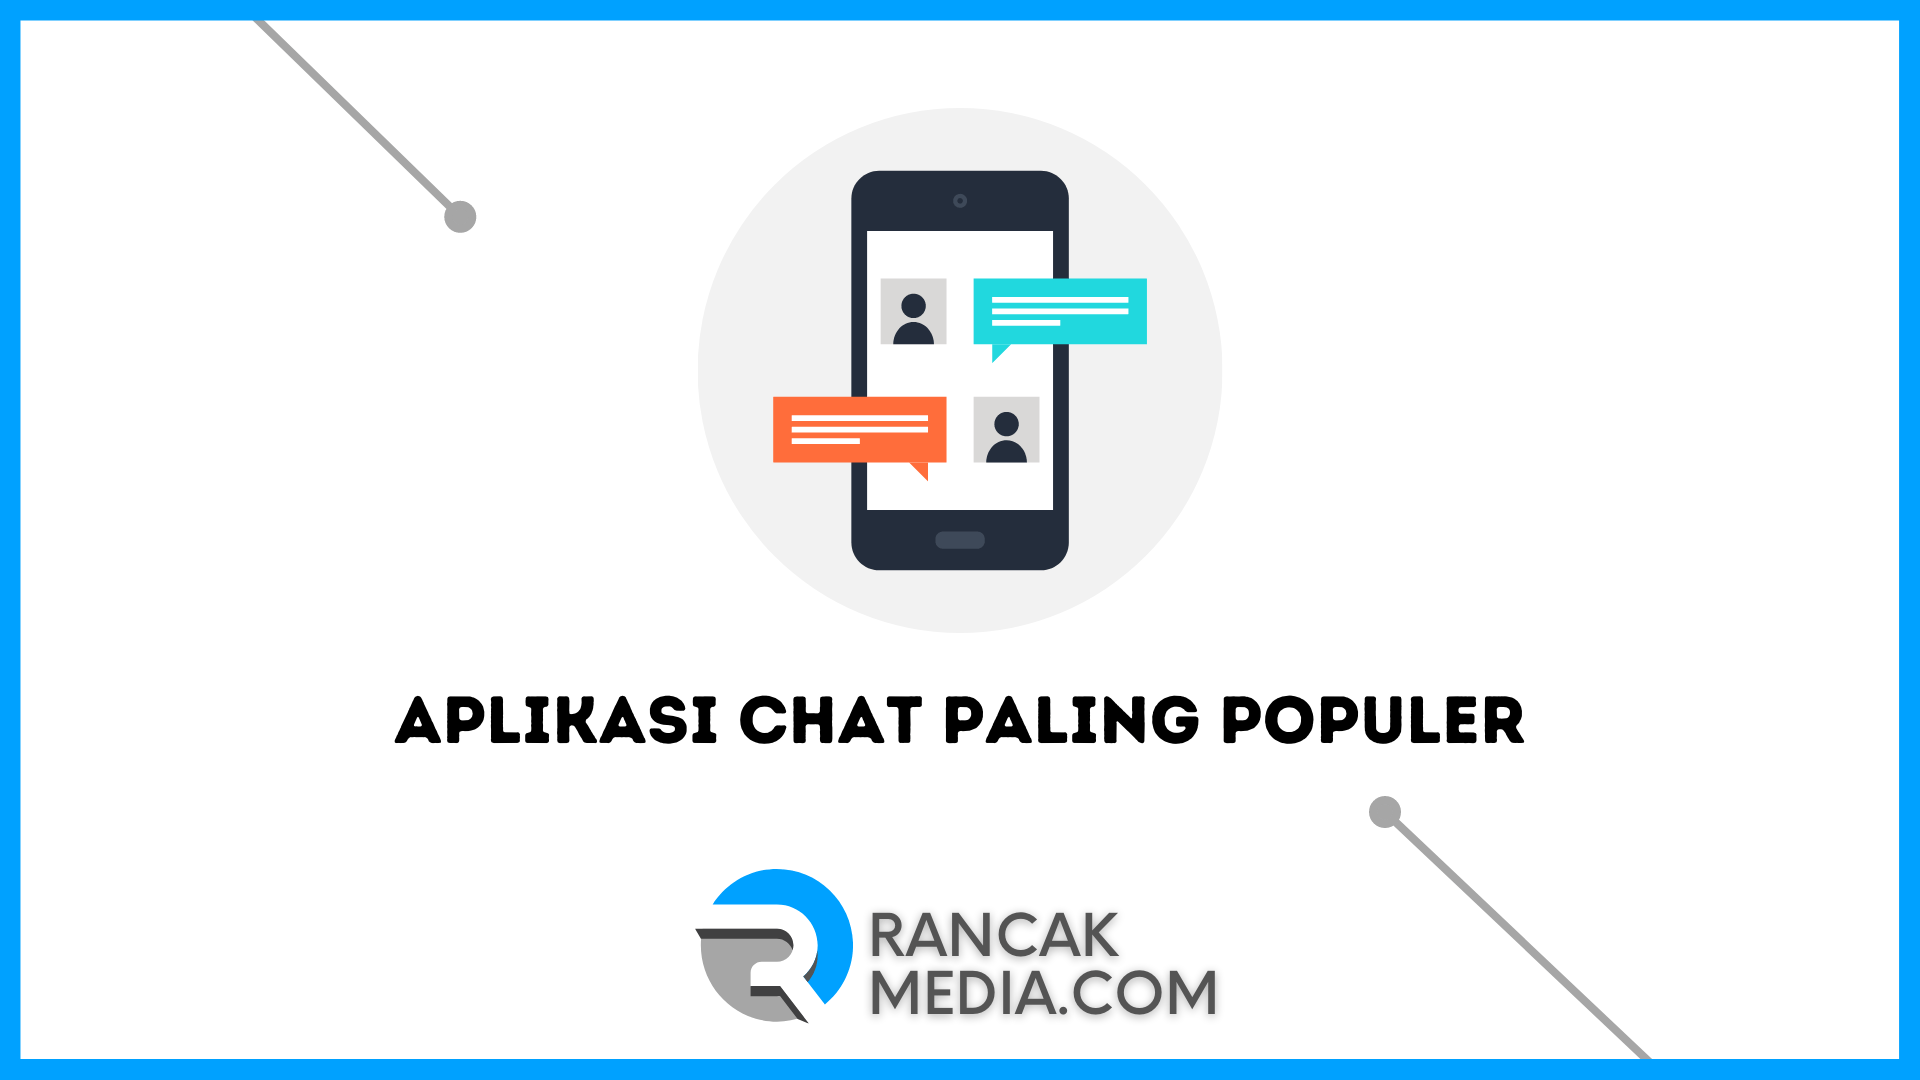 Aplikasi Chat Android Paling Populer. Aplikasi Chat Paling Populer di Android dan iPhone